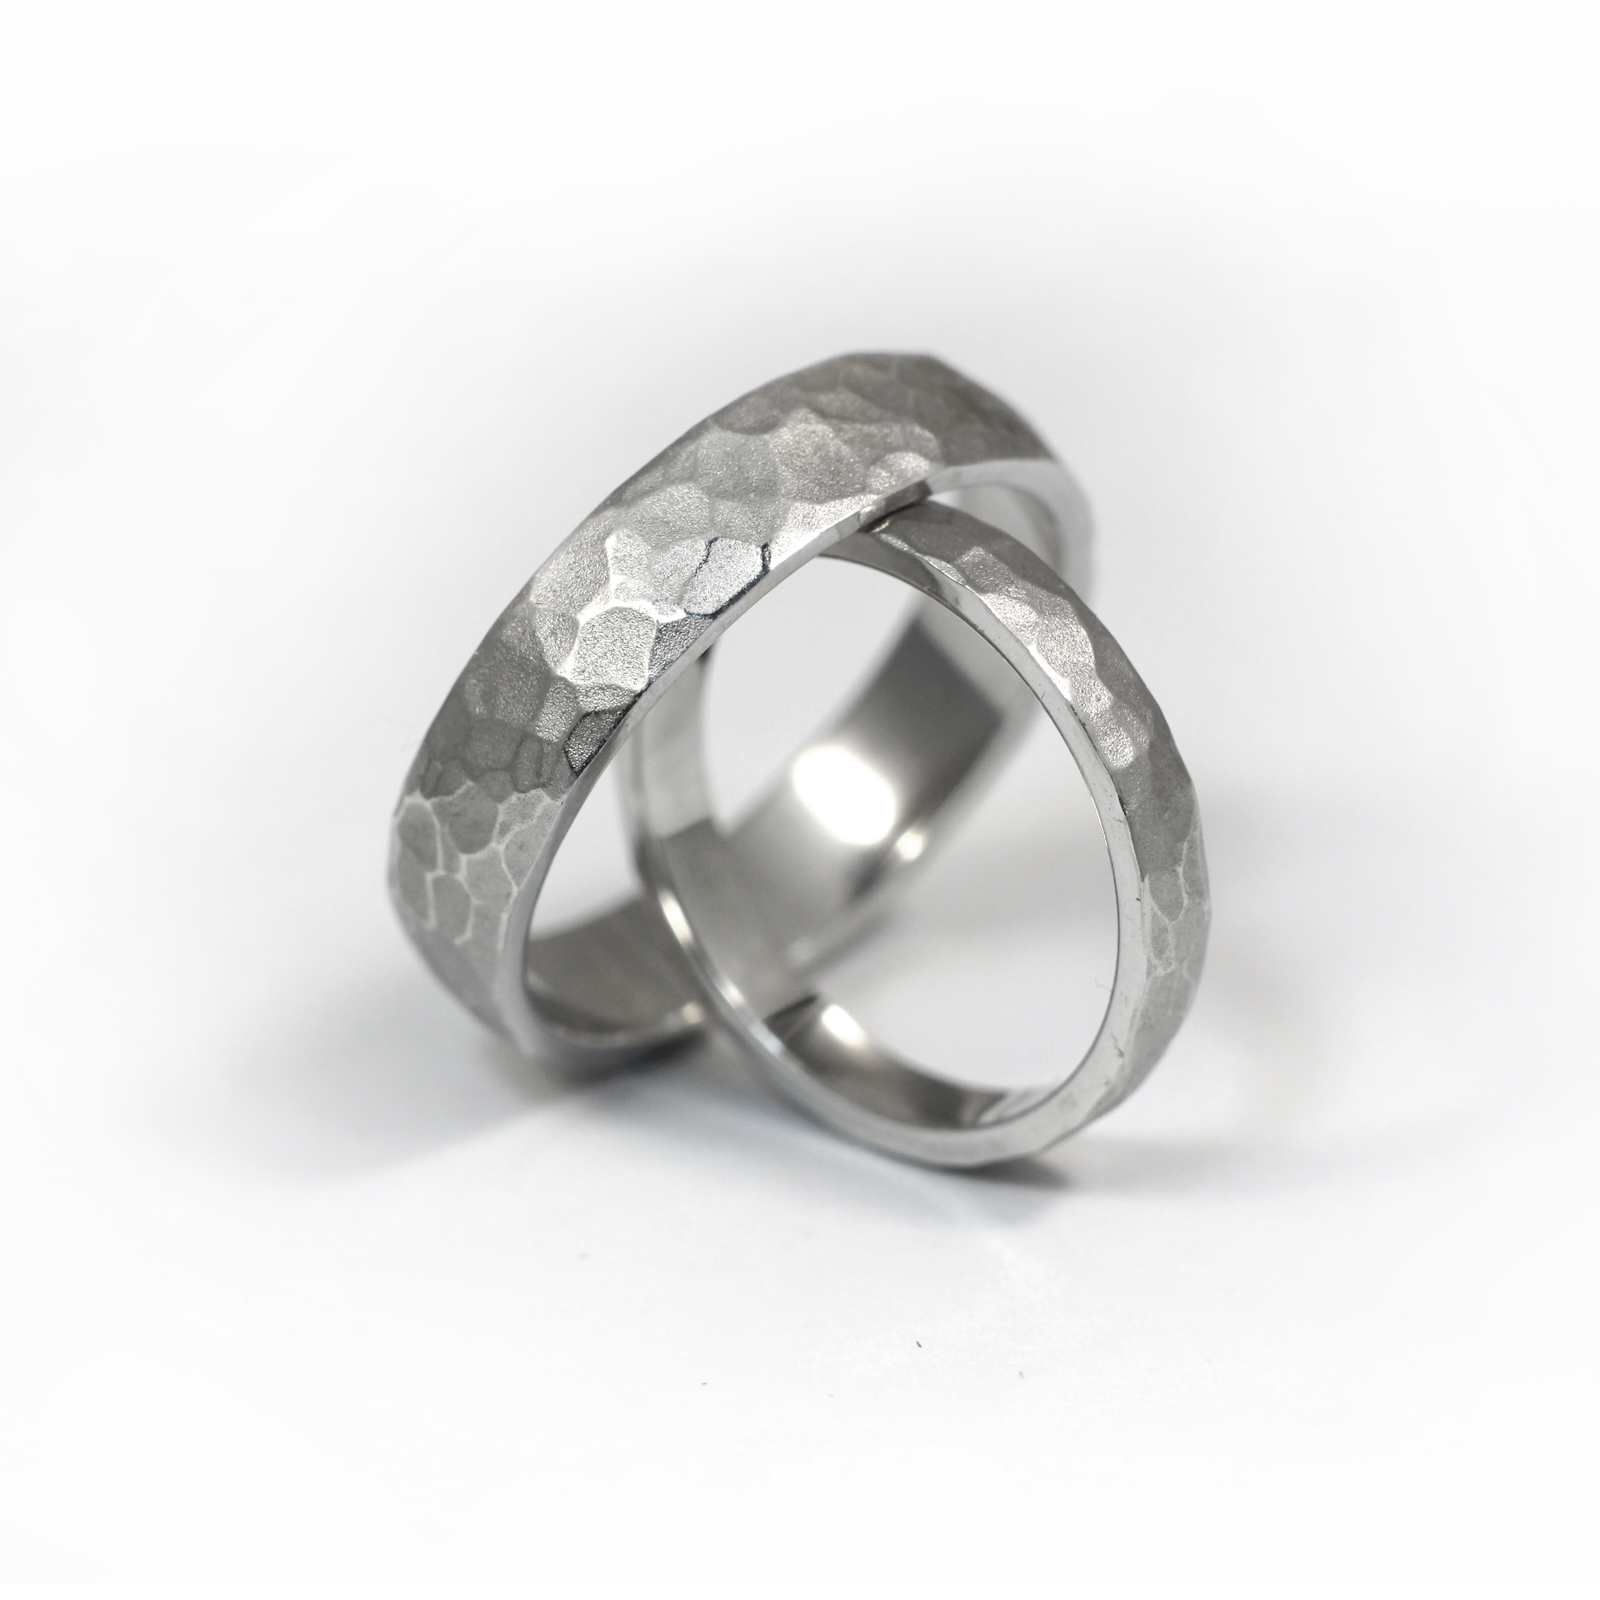 Как сделать обручальные кольца на свадьбу своими руками?